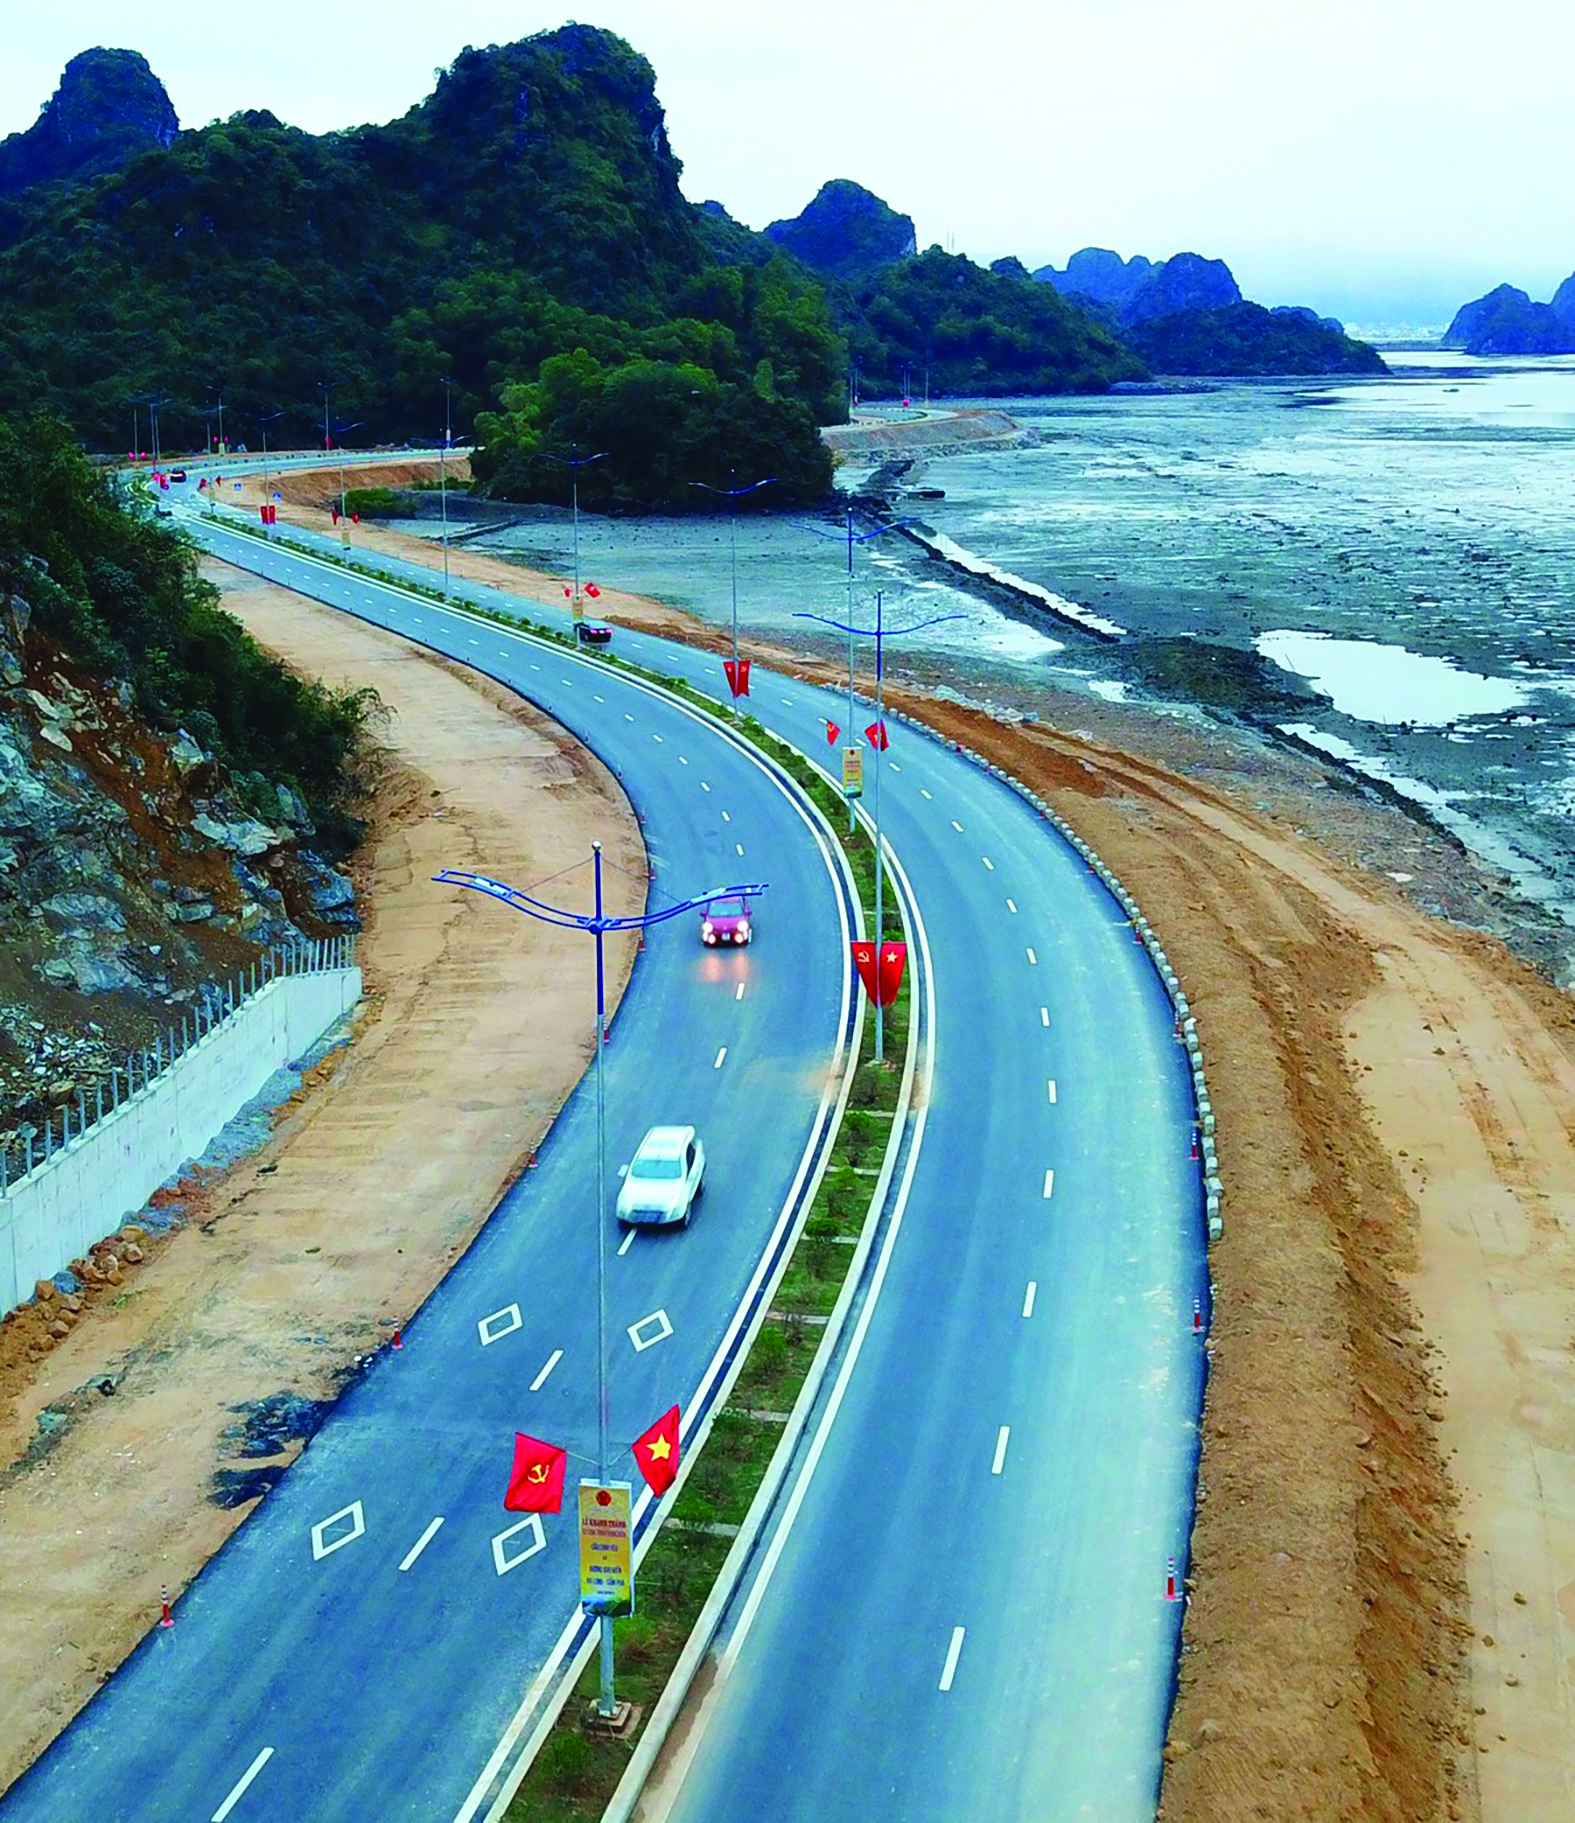 Tuyến đường ven biển kết nối Hạ Long – Cẩm Phả, Quảng Ninh tạo thuận lợi cho liên kết vùng kinh tế trọng điểm, phát triển kinh tế biển. Ảnh: Lê Toàn